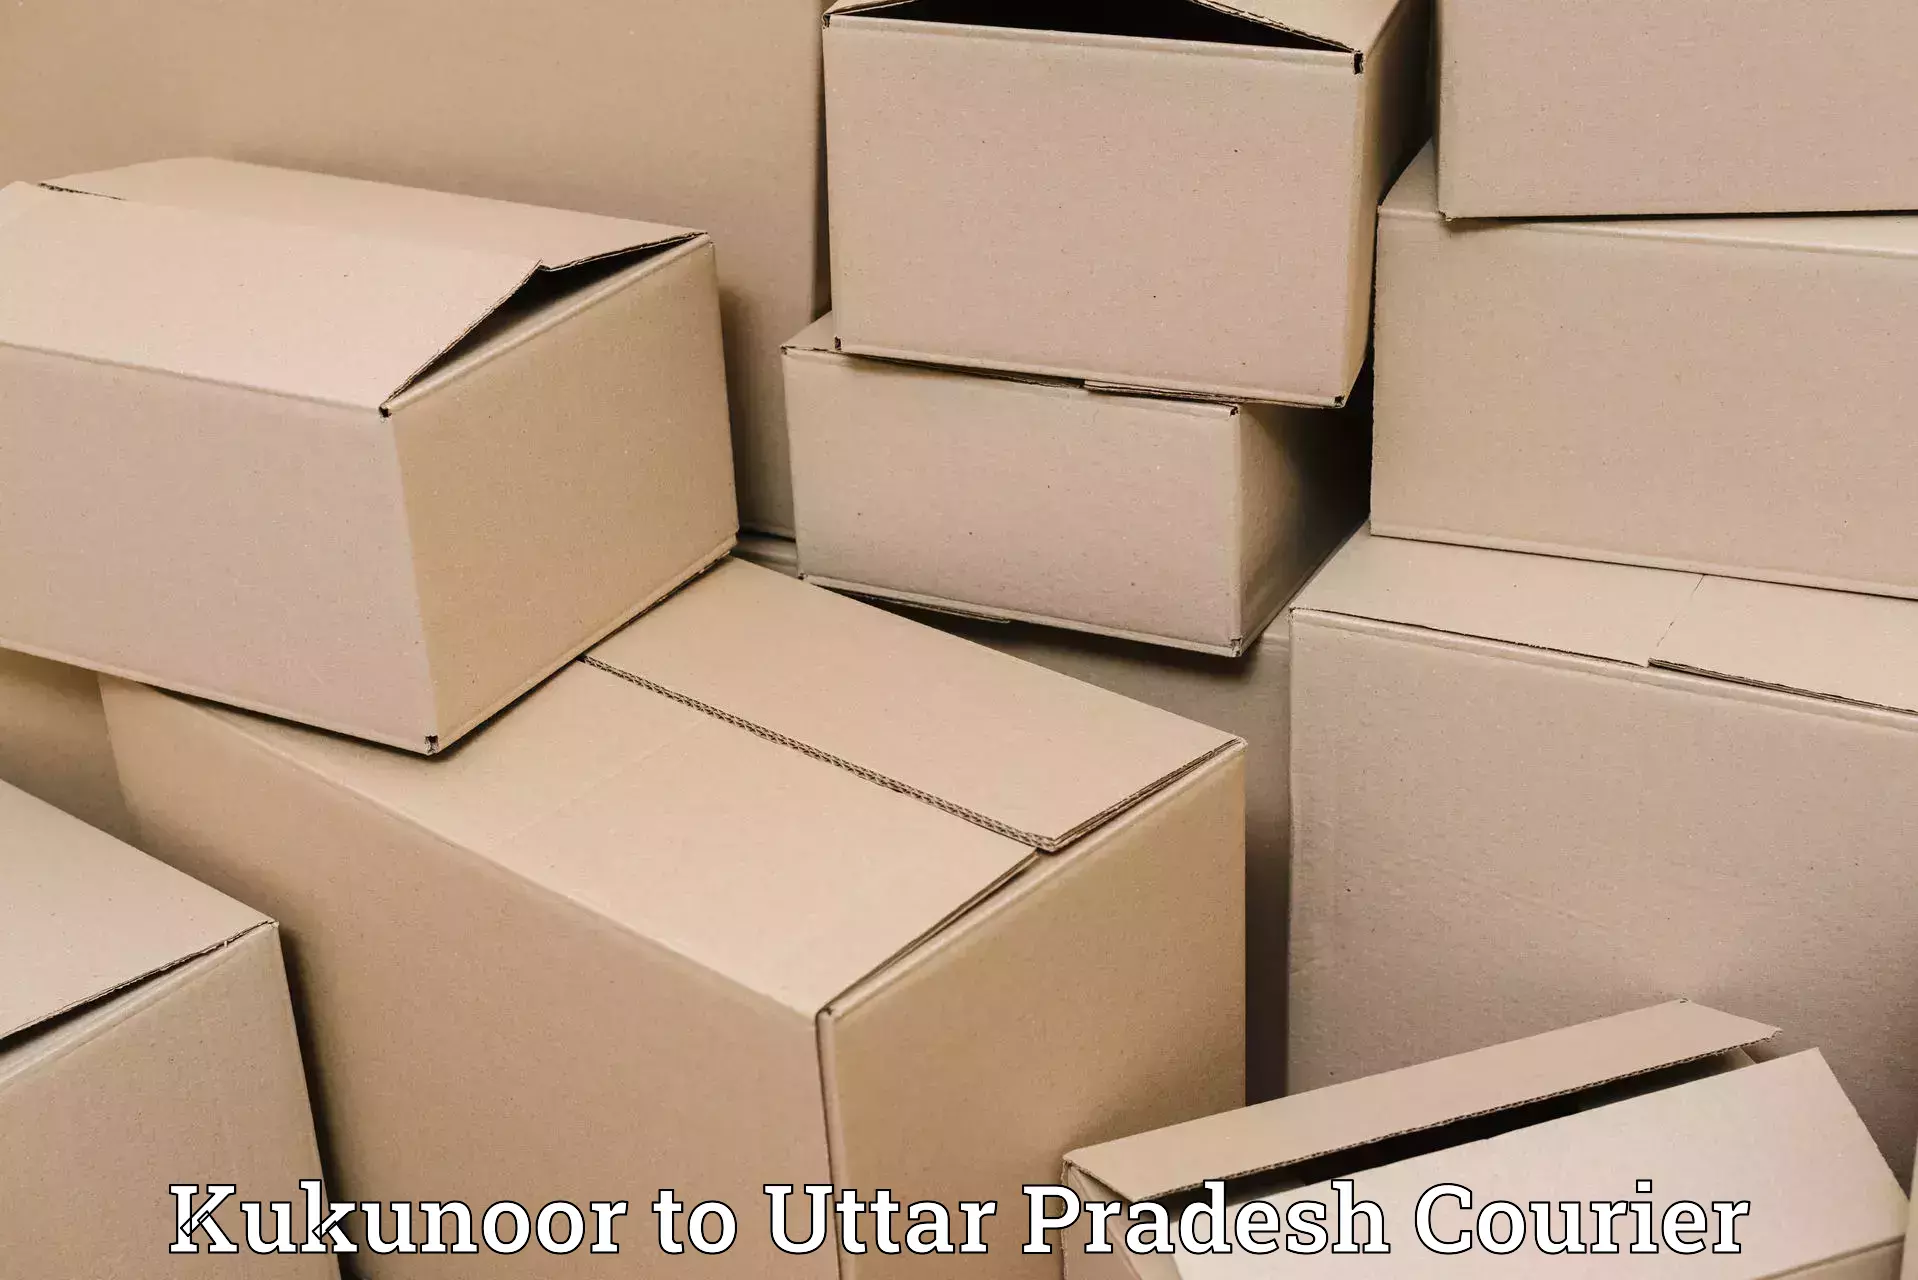 Individual parcel service in Kukunoor to Aligarh